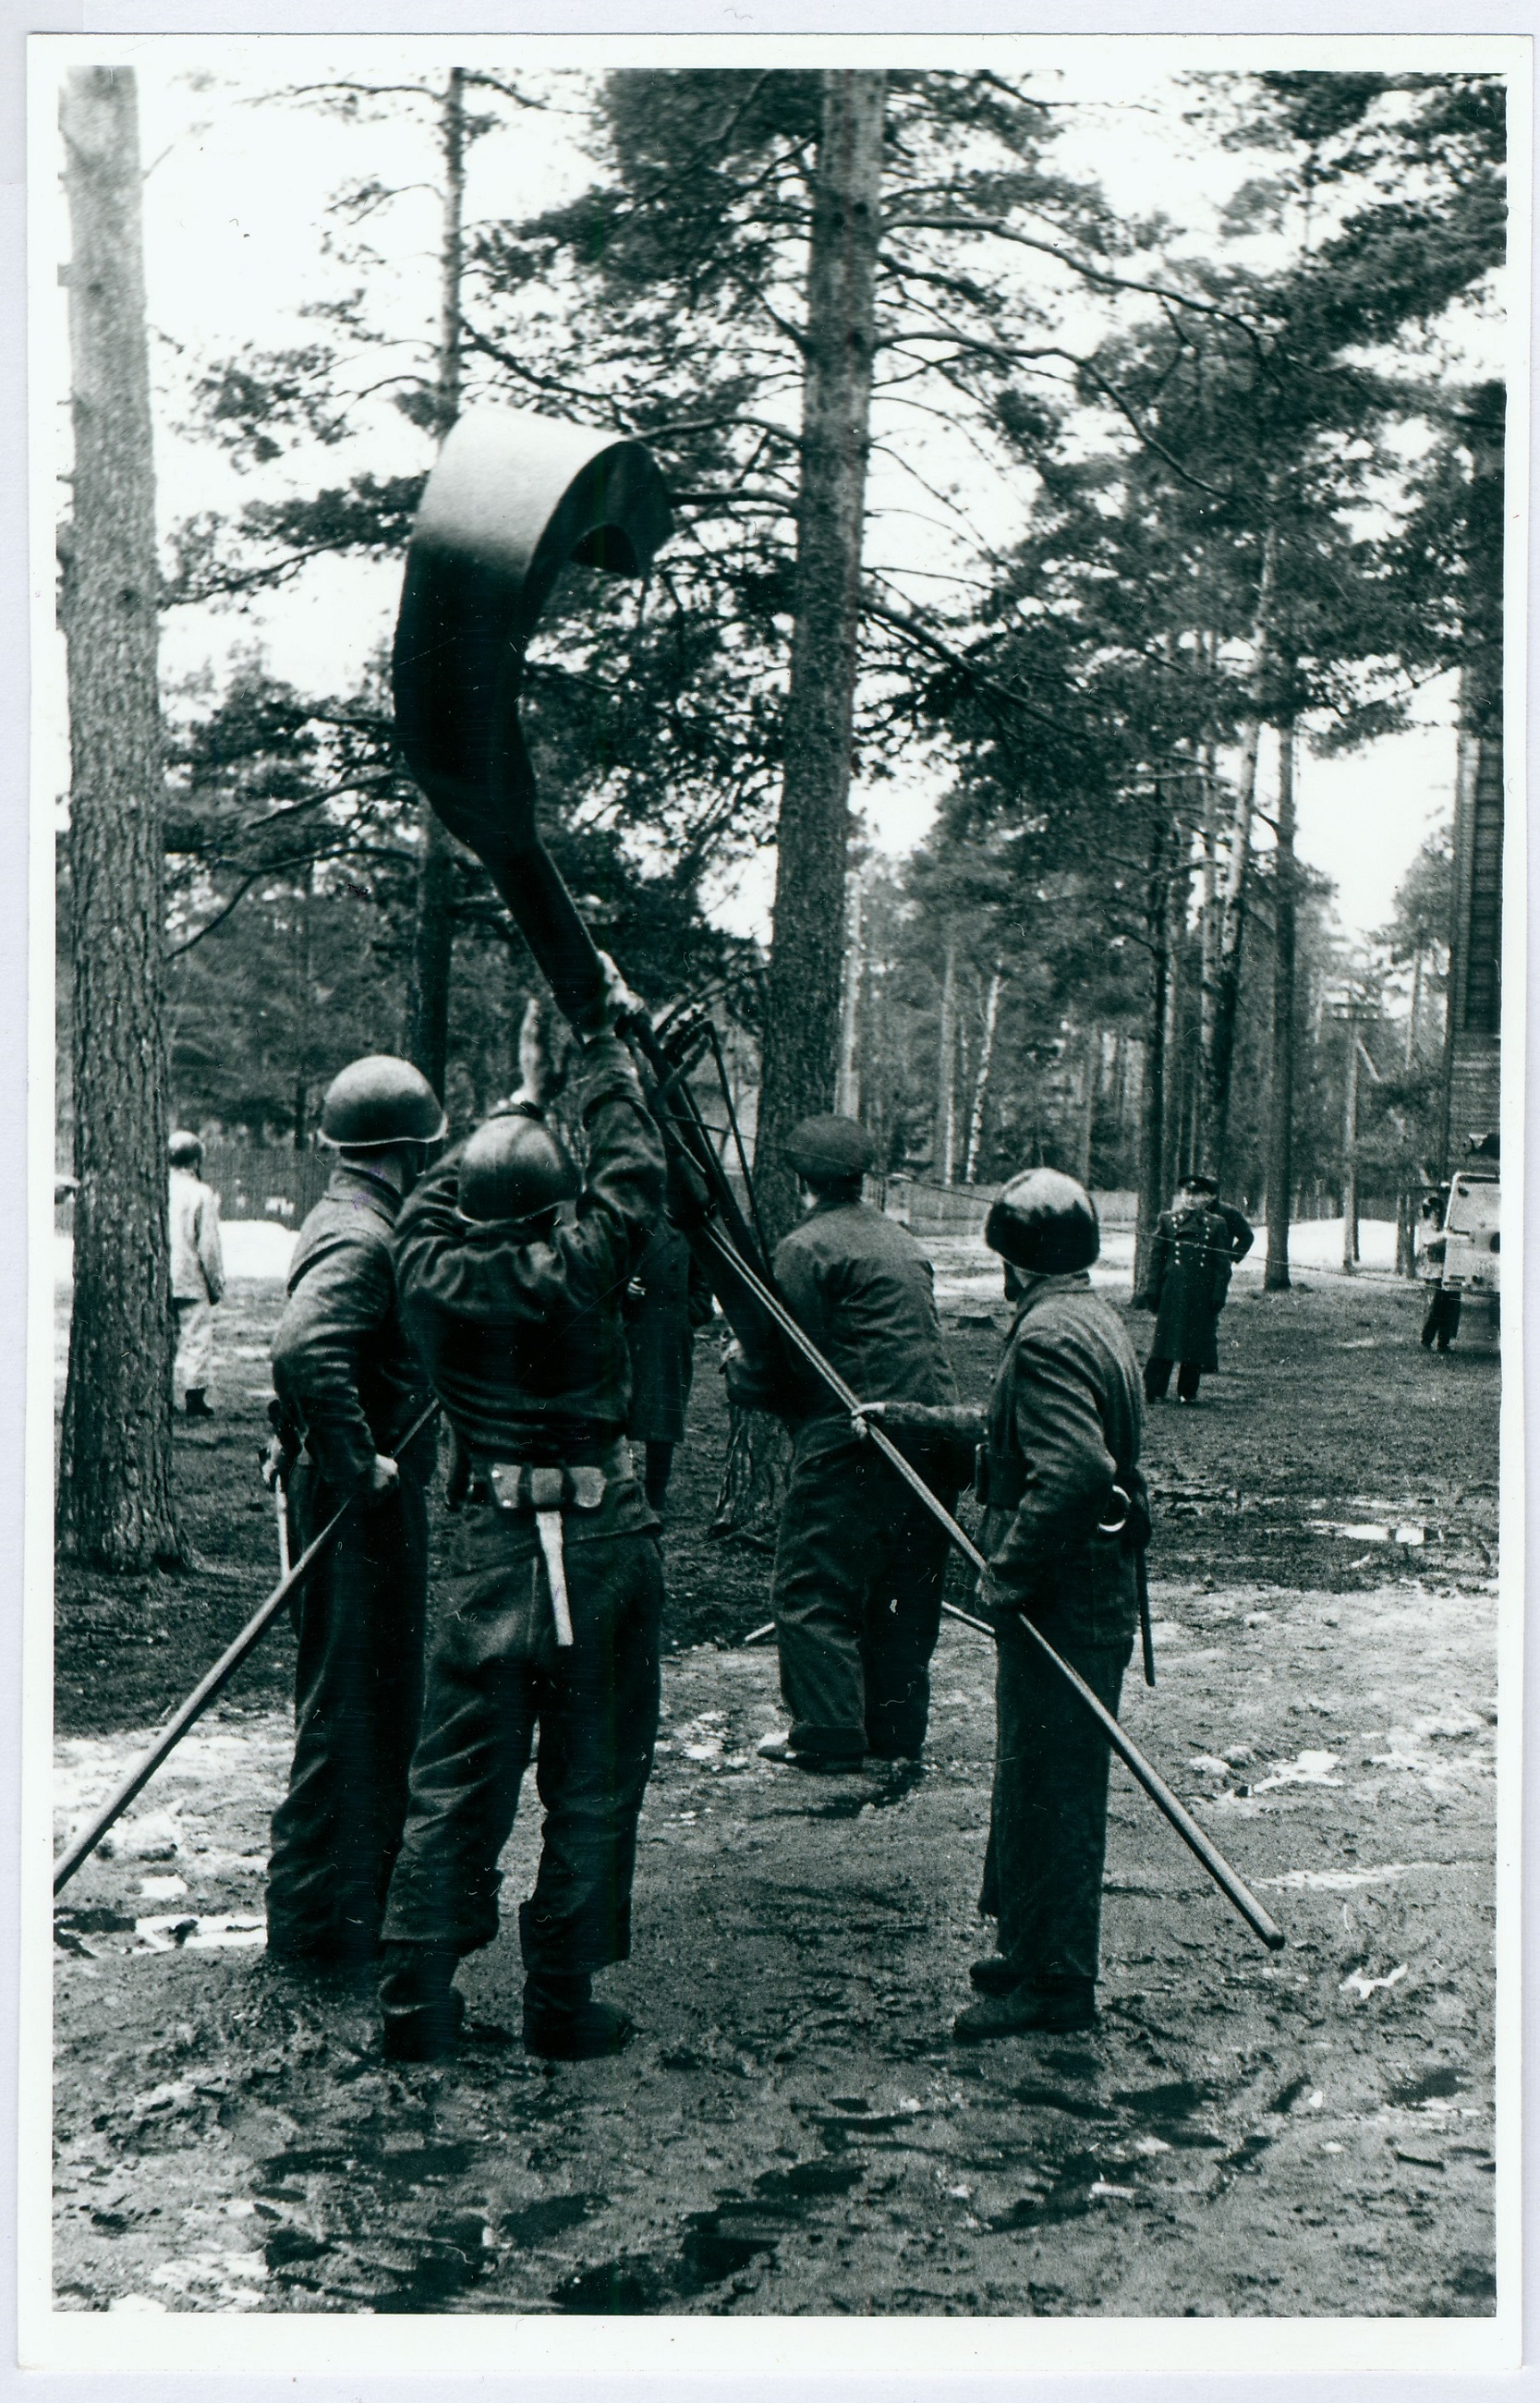 Sõjaväestatud tuletõrje õppus ja võistlused. Vahu masti püstitamine
1960